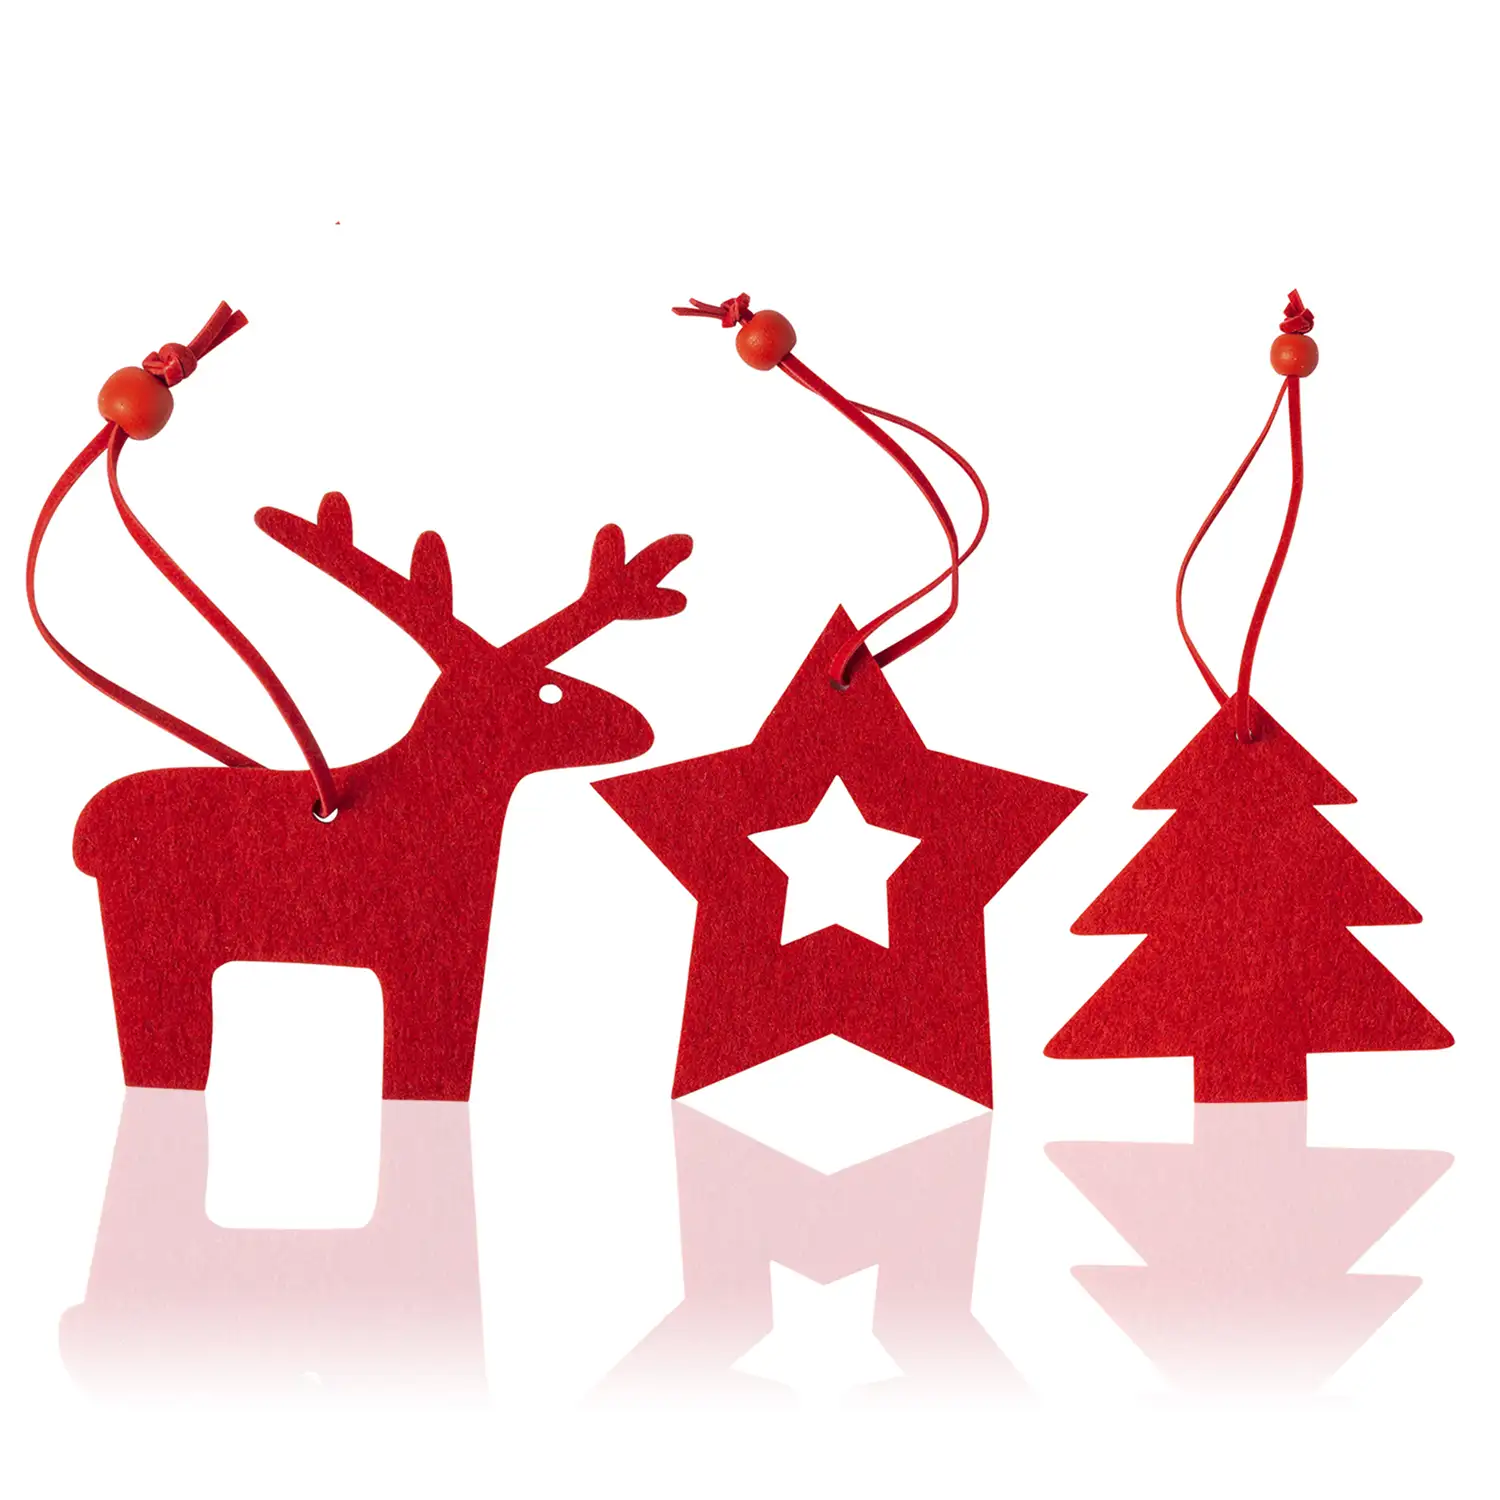 Set de 3 figuras navideñas para colgar. Incluye reno, estrella y árbol de navidad.